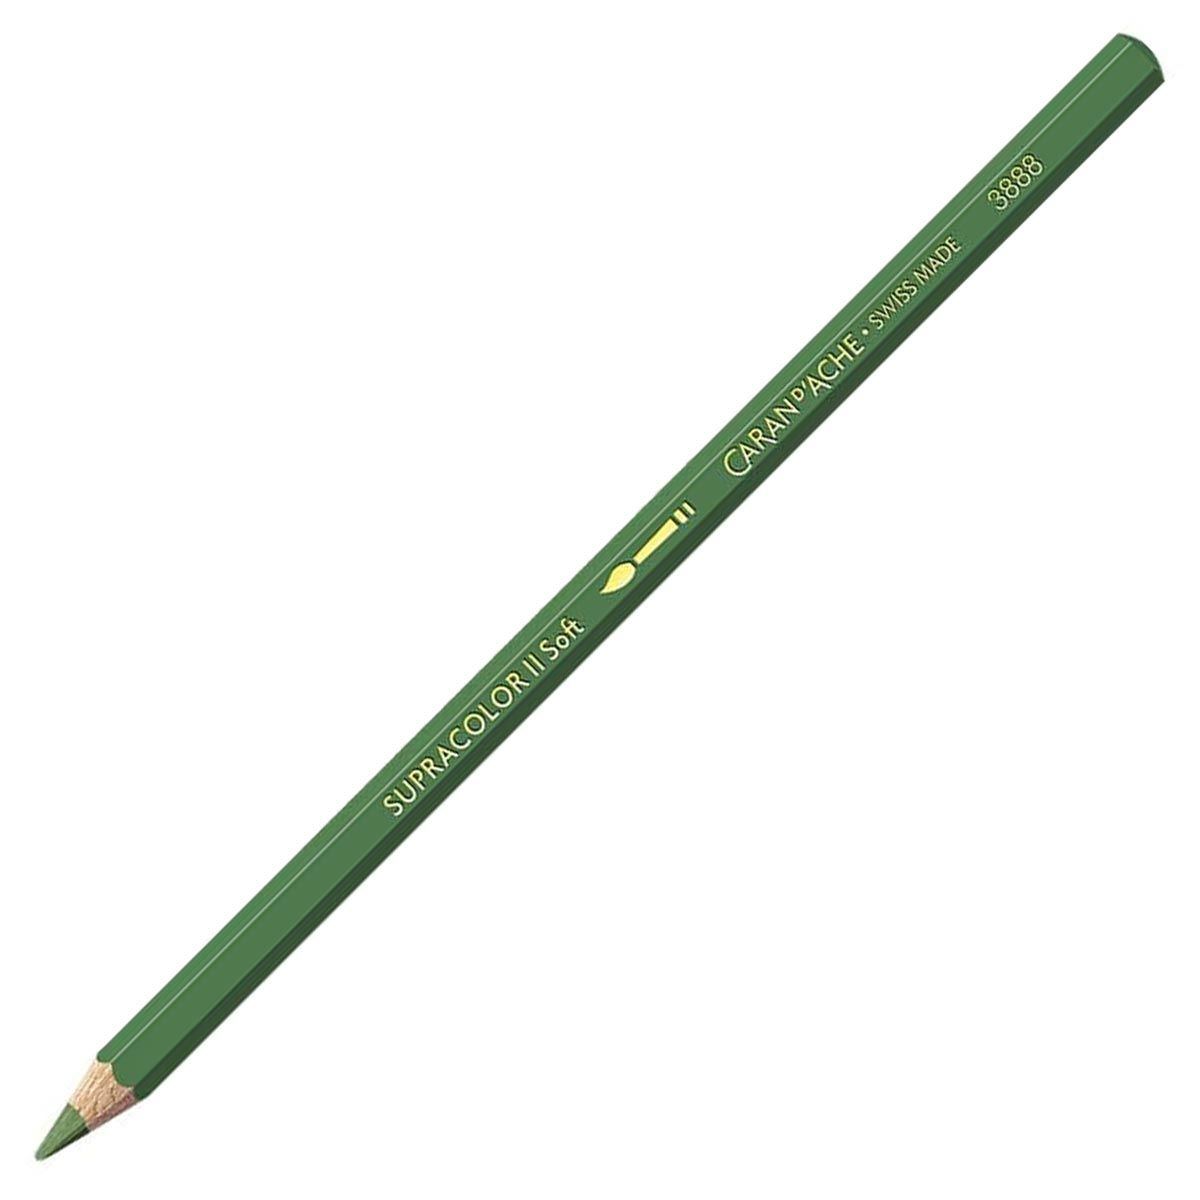 Caran d'Ache Supracolor ll Soft Aquarelle Pencil - Moss Green 225